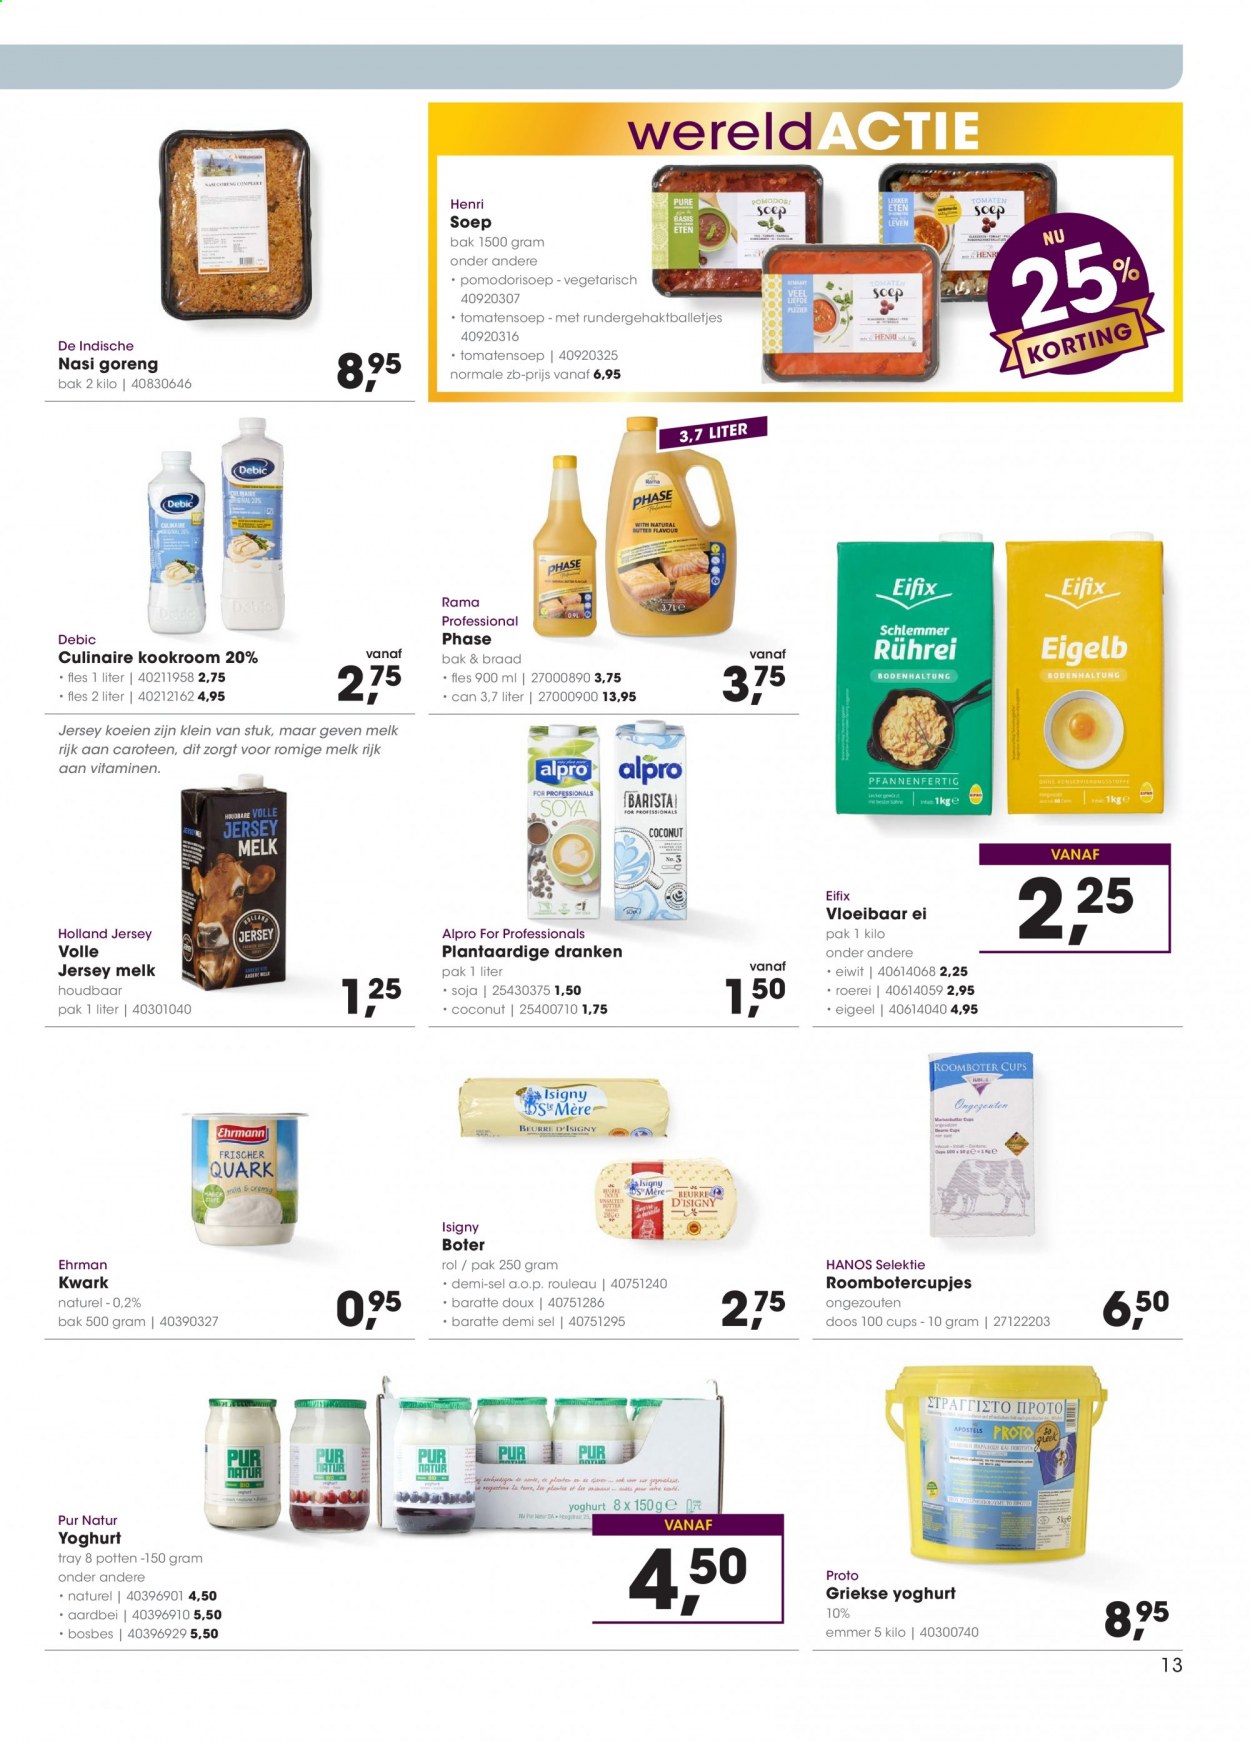 thumbnail - Hanos-aanbieding - 3-5-2021 - 16-5-2021 -  producten in de aanbieding - vegetarisch eten, yoghurt, griekse yoghurt, melk, ei, Rama, kookroom. Pagina 13.